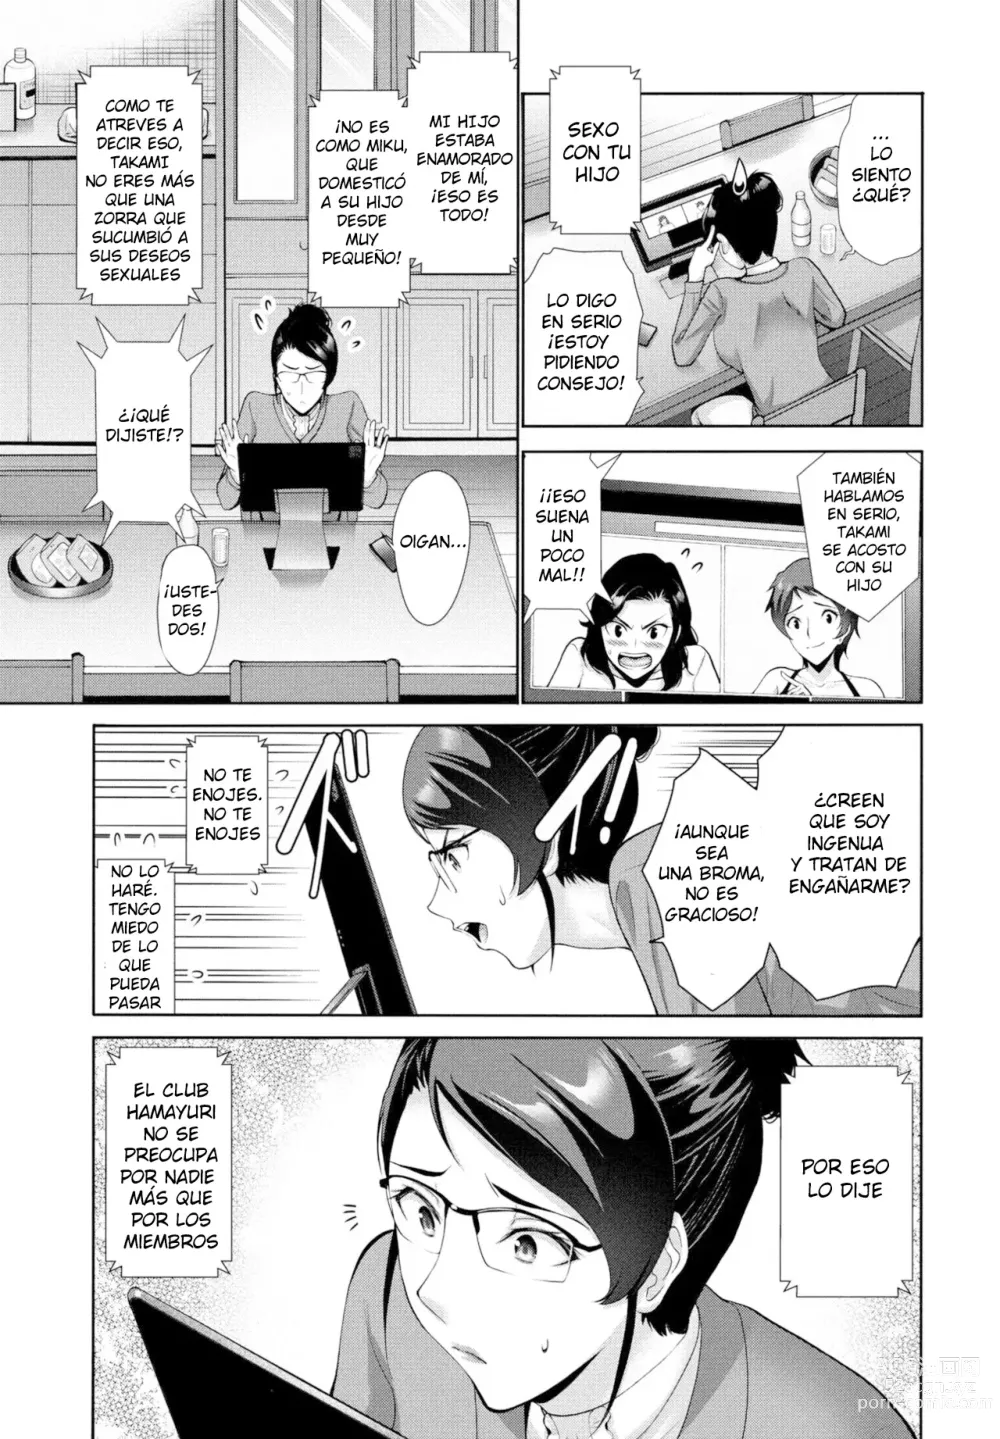 Page 3 of manga Hamayuri Club ~Prologue~